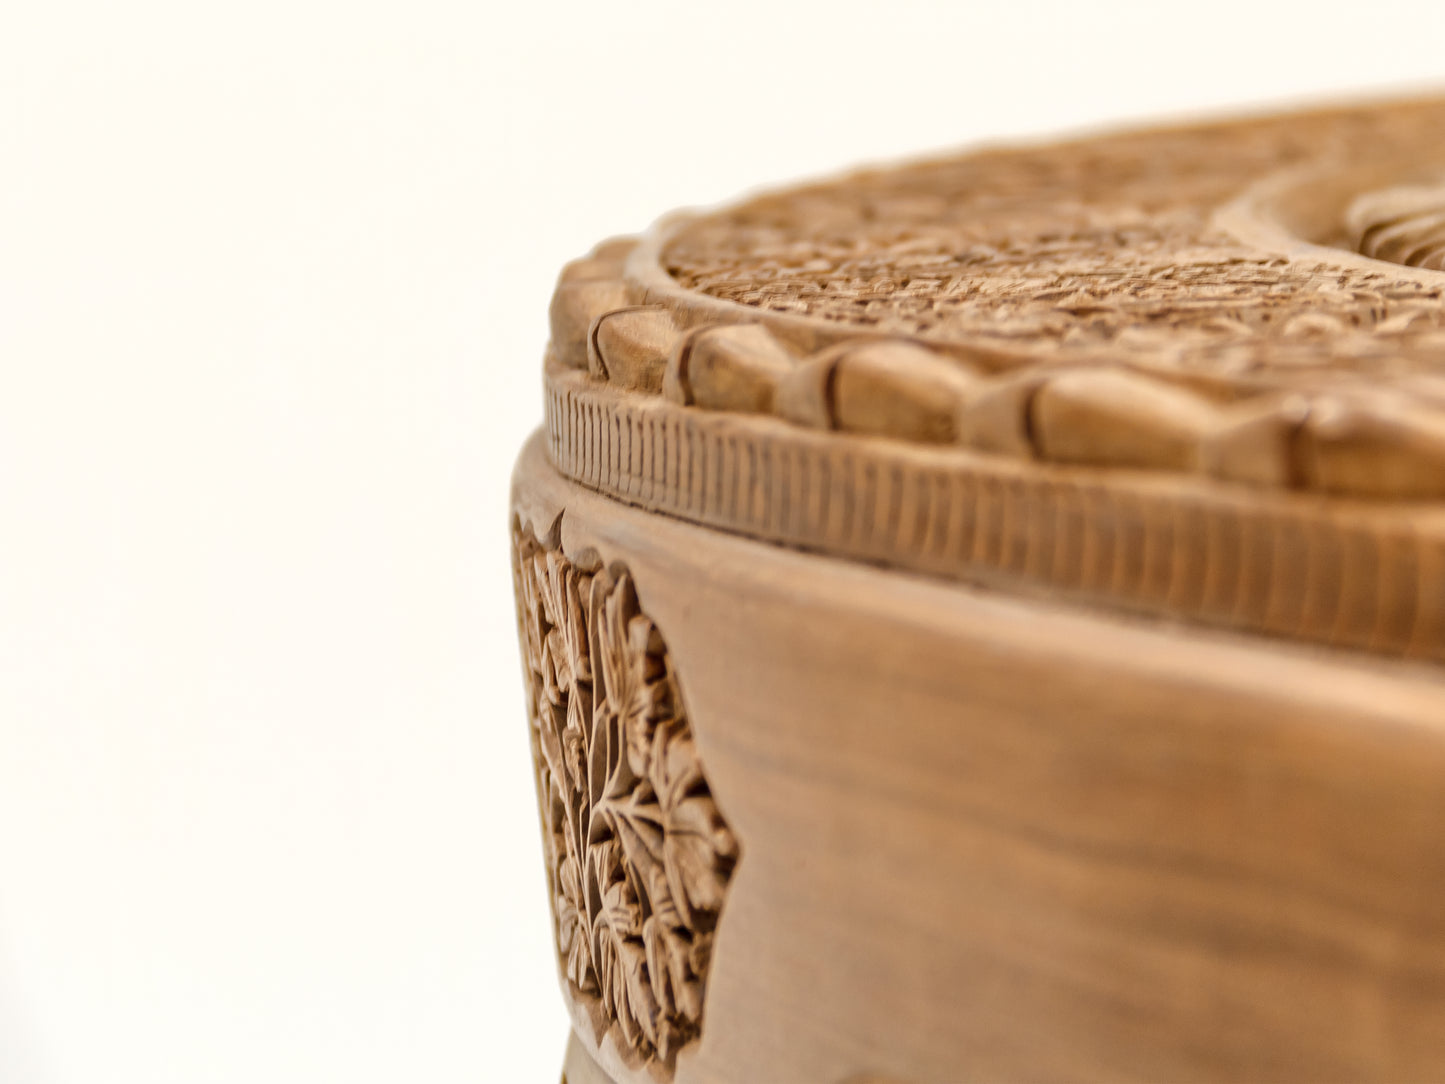 Handmade Walnut Table "4 seasons" product image #29720065310890